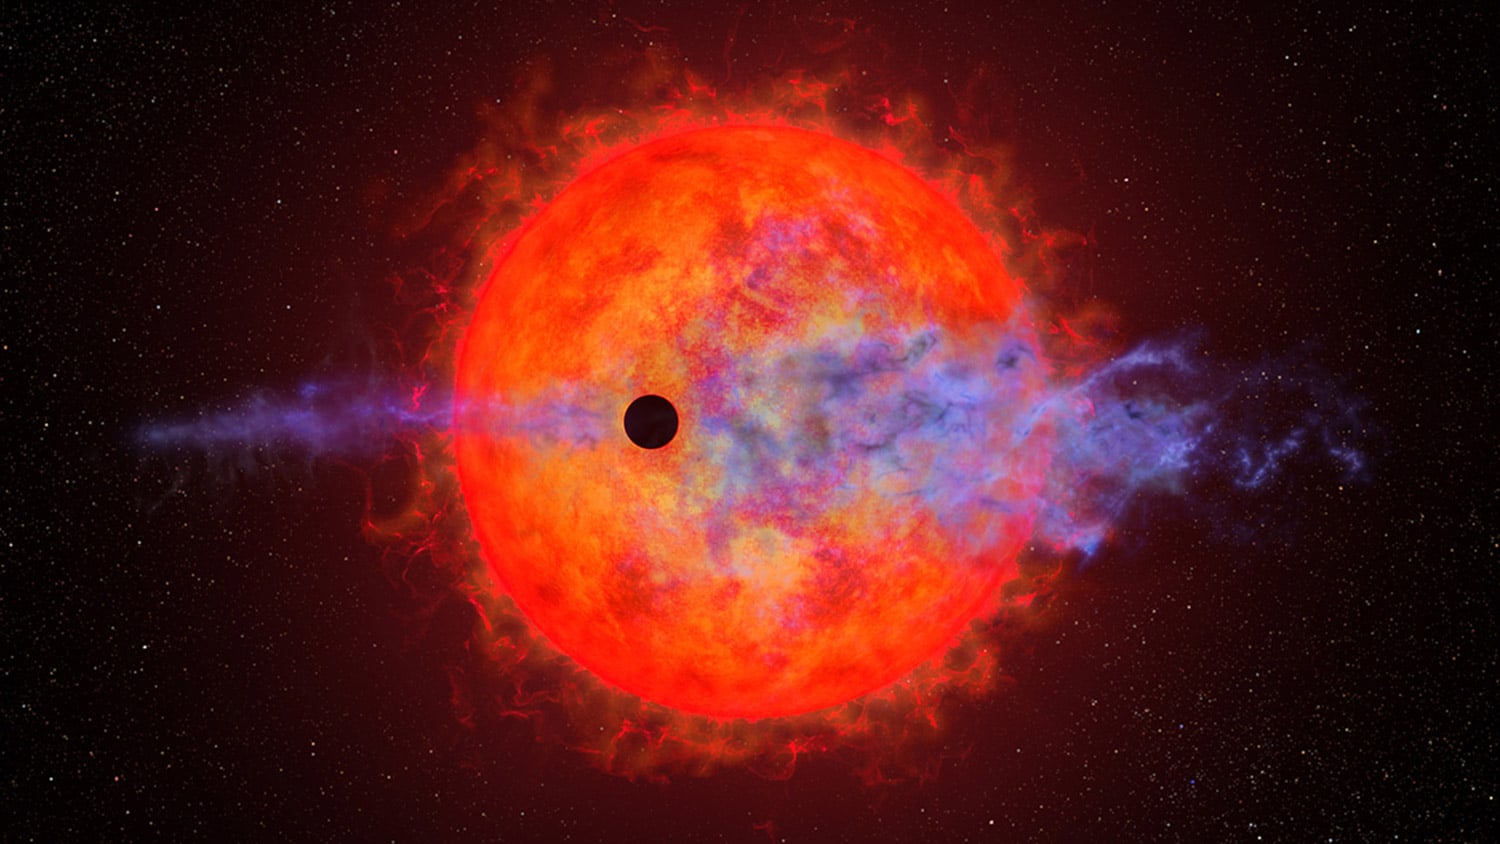 red dwarf star AU Microscopii